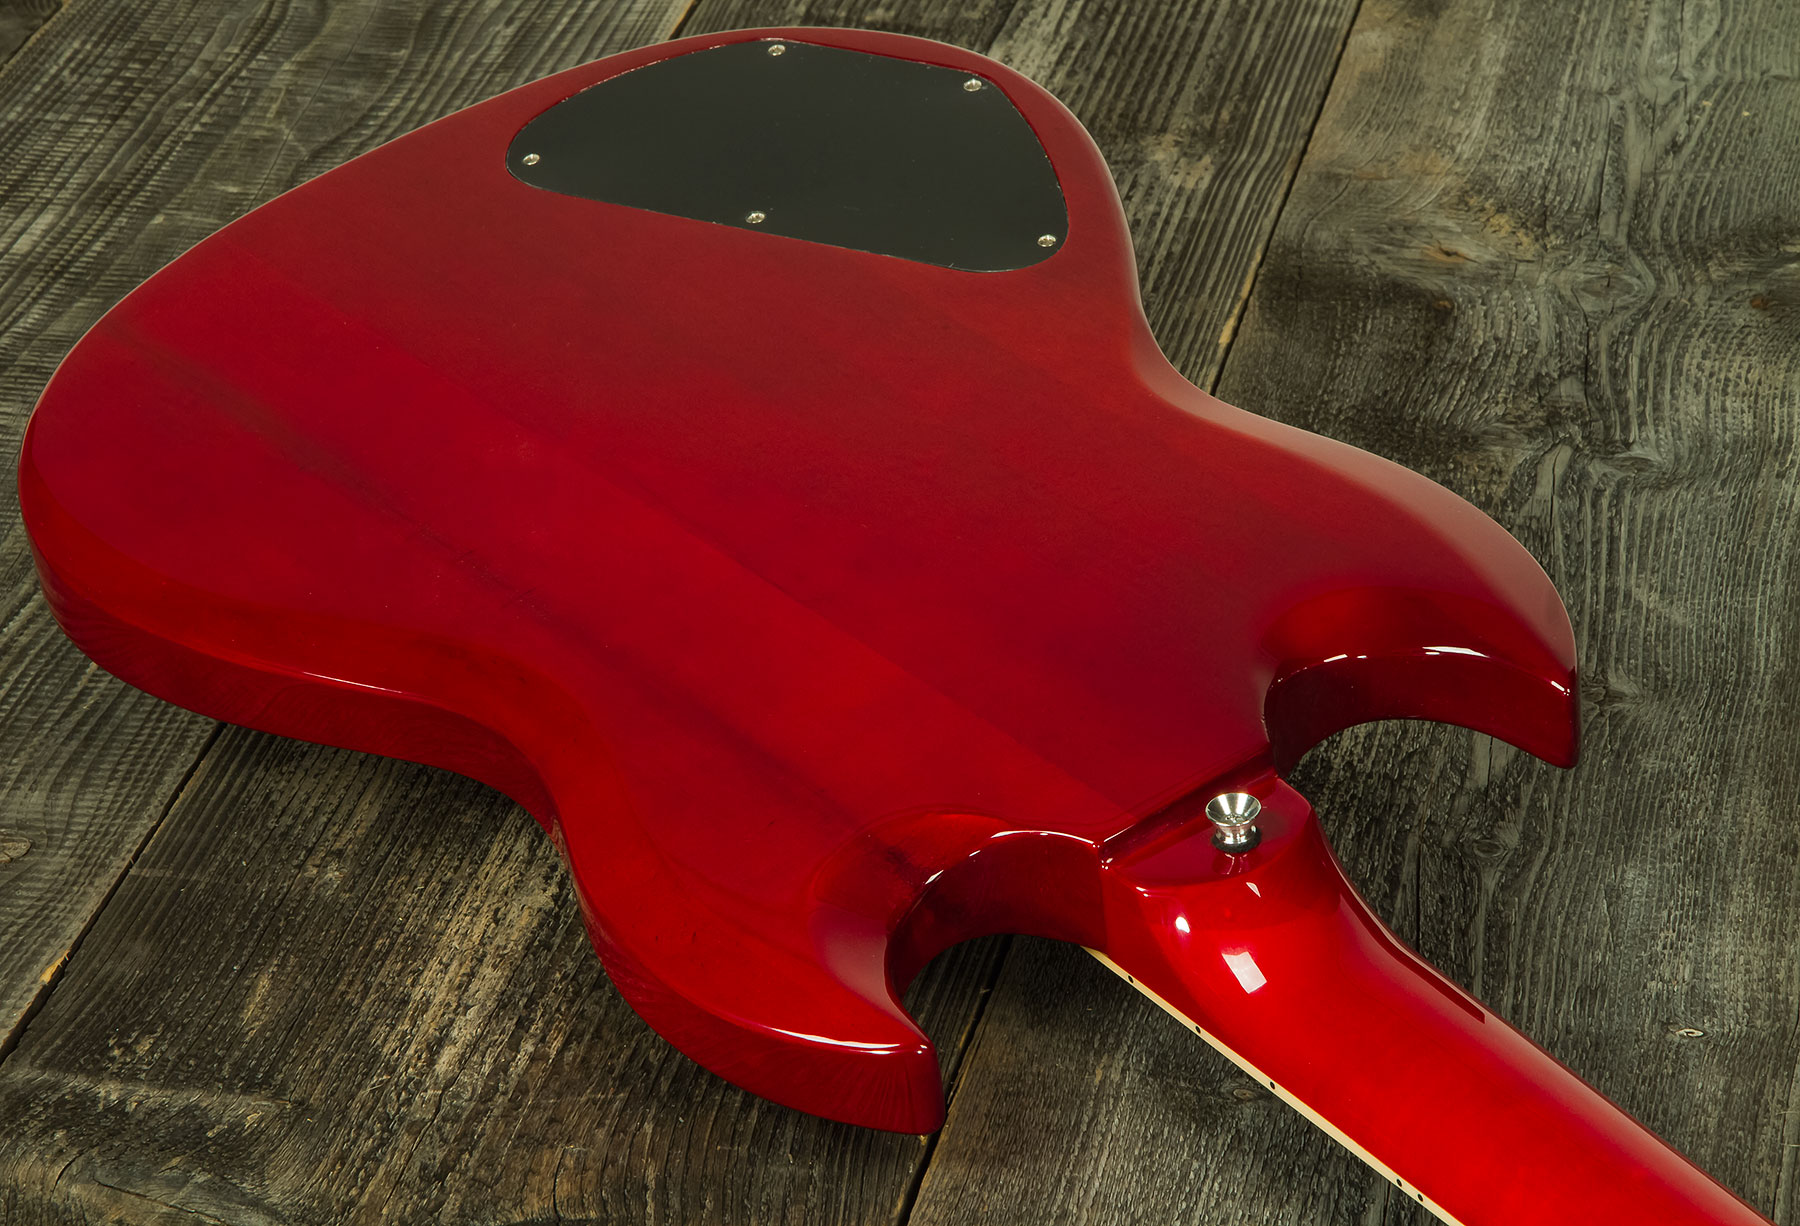 Eastone Sdc70 Hh Ht Pur - Red - Guitarra eléctrica de doble corte. - Variation 2